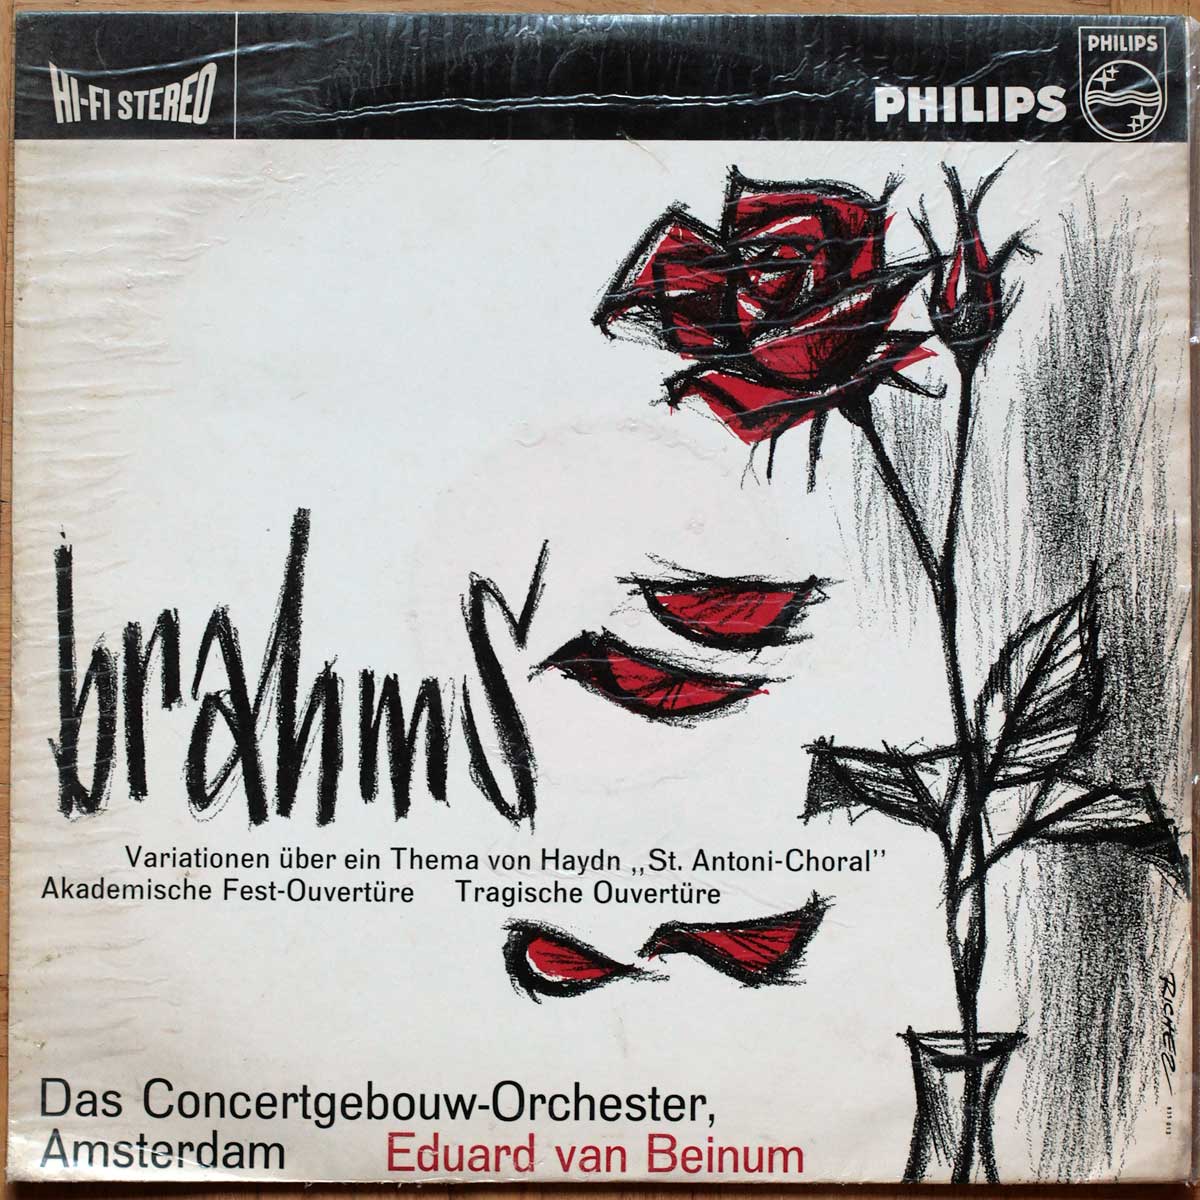 Brahms • Variations sur un thème de Haydn • Ouverture pour une fête académique • Ouverture tragique • Philips 835 013 AY • Das Concertgebouw-Orchester Amsterdam • Eduard van Beinum